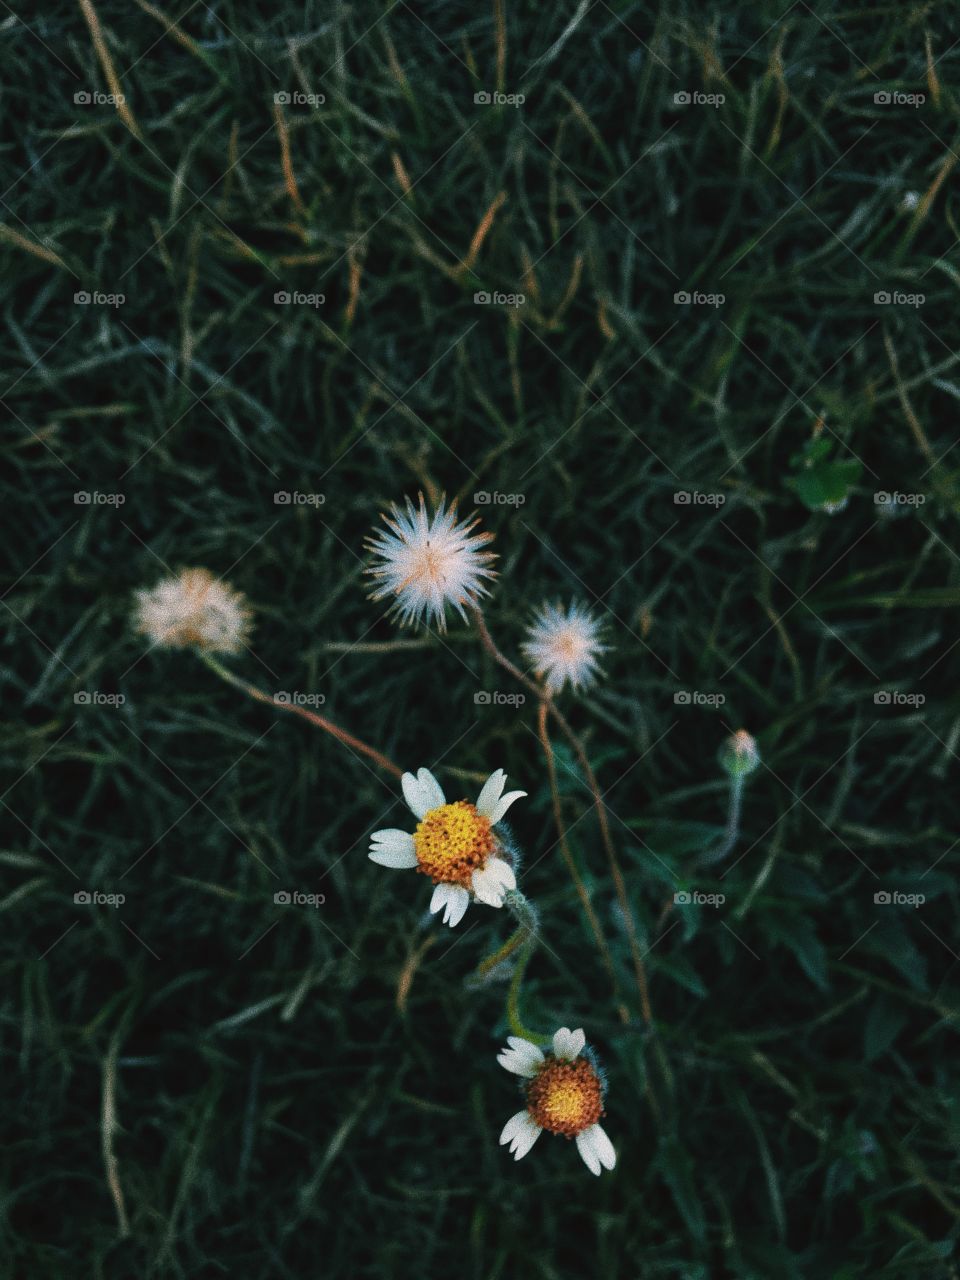 Little flowers